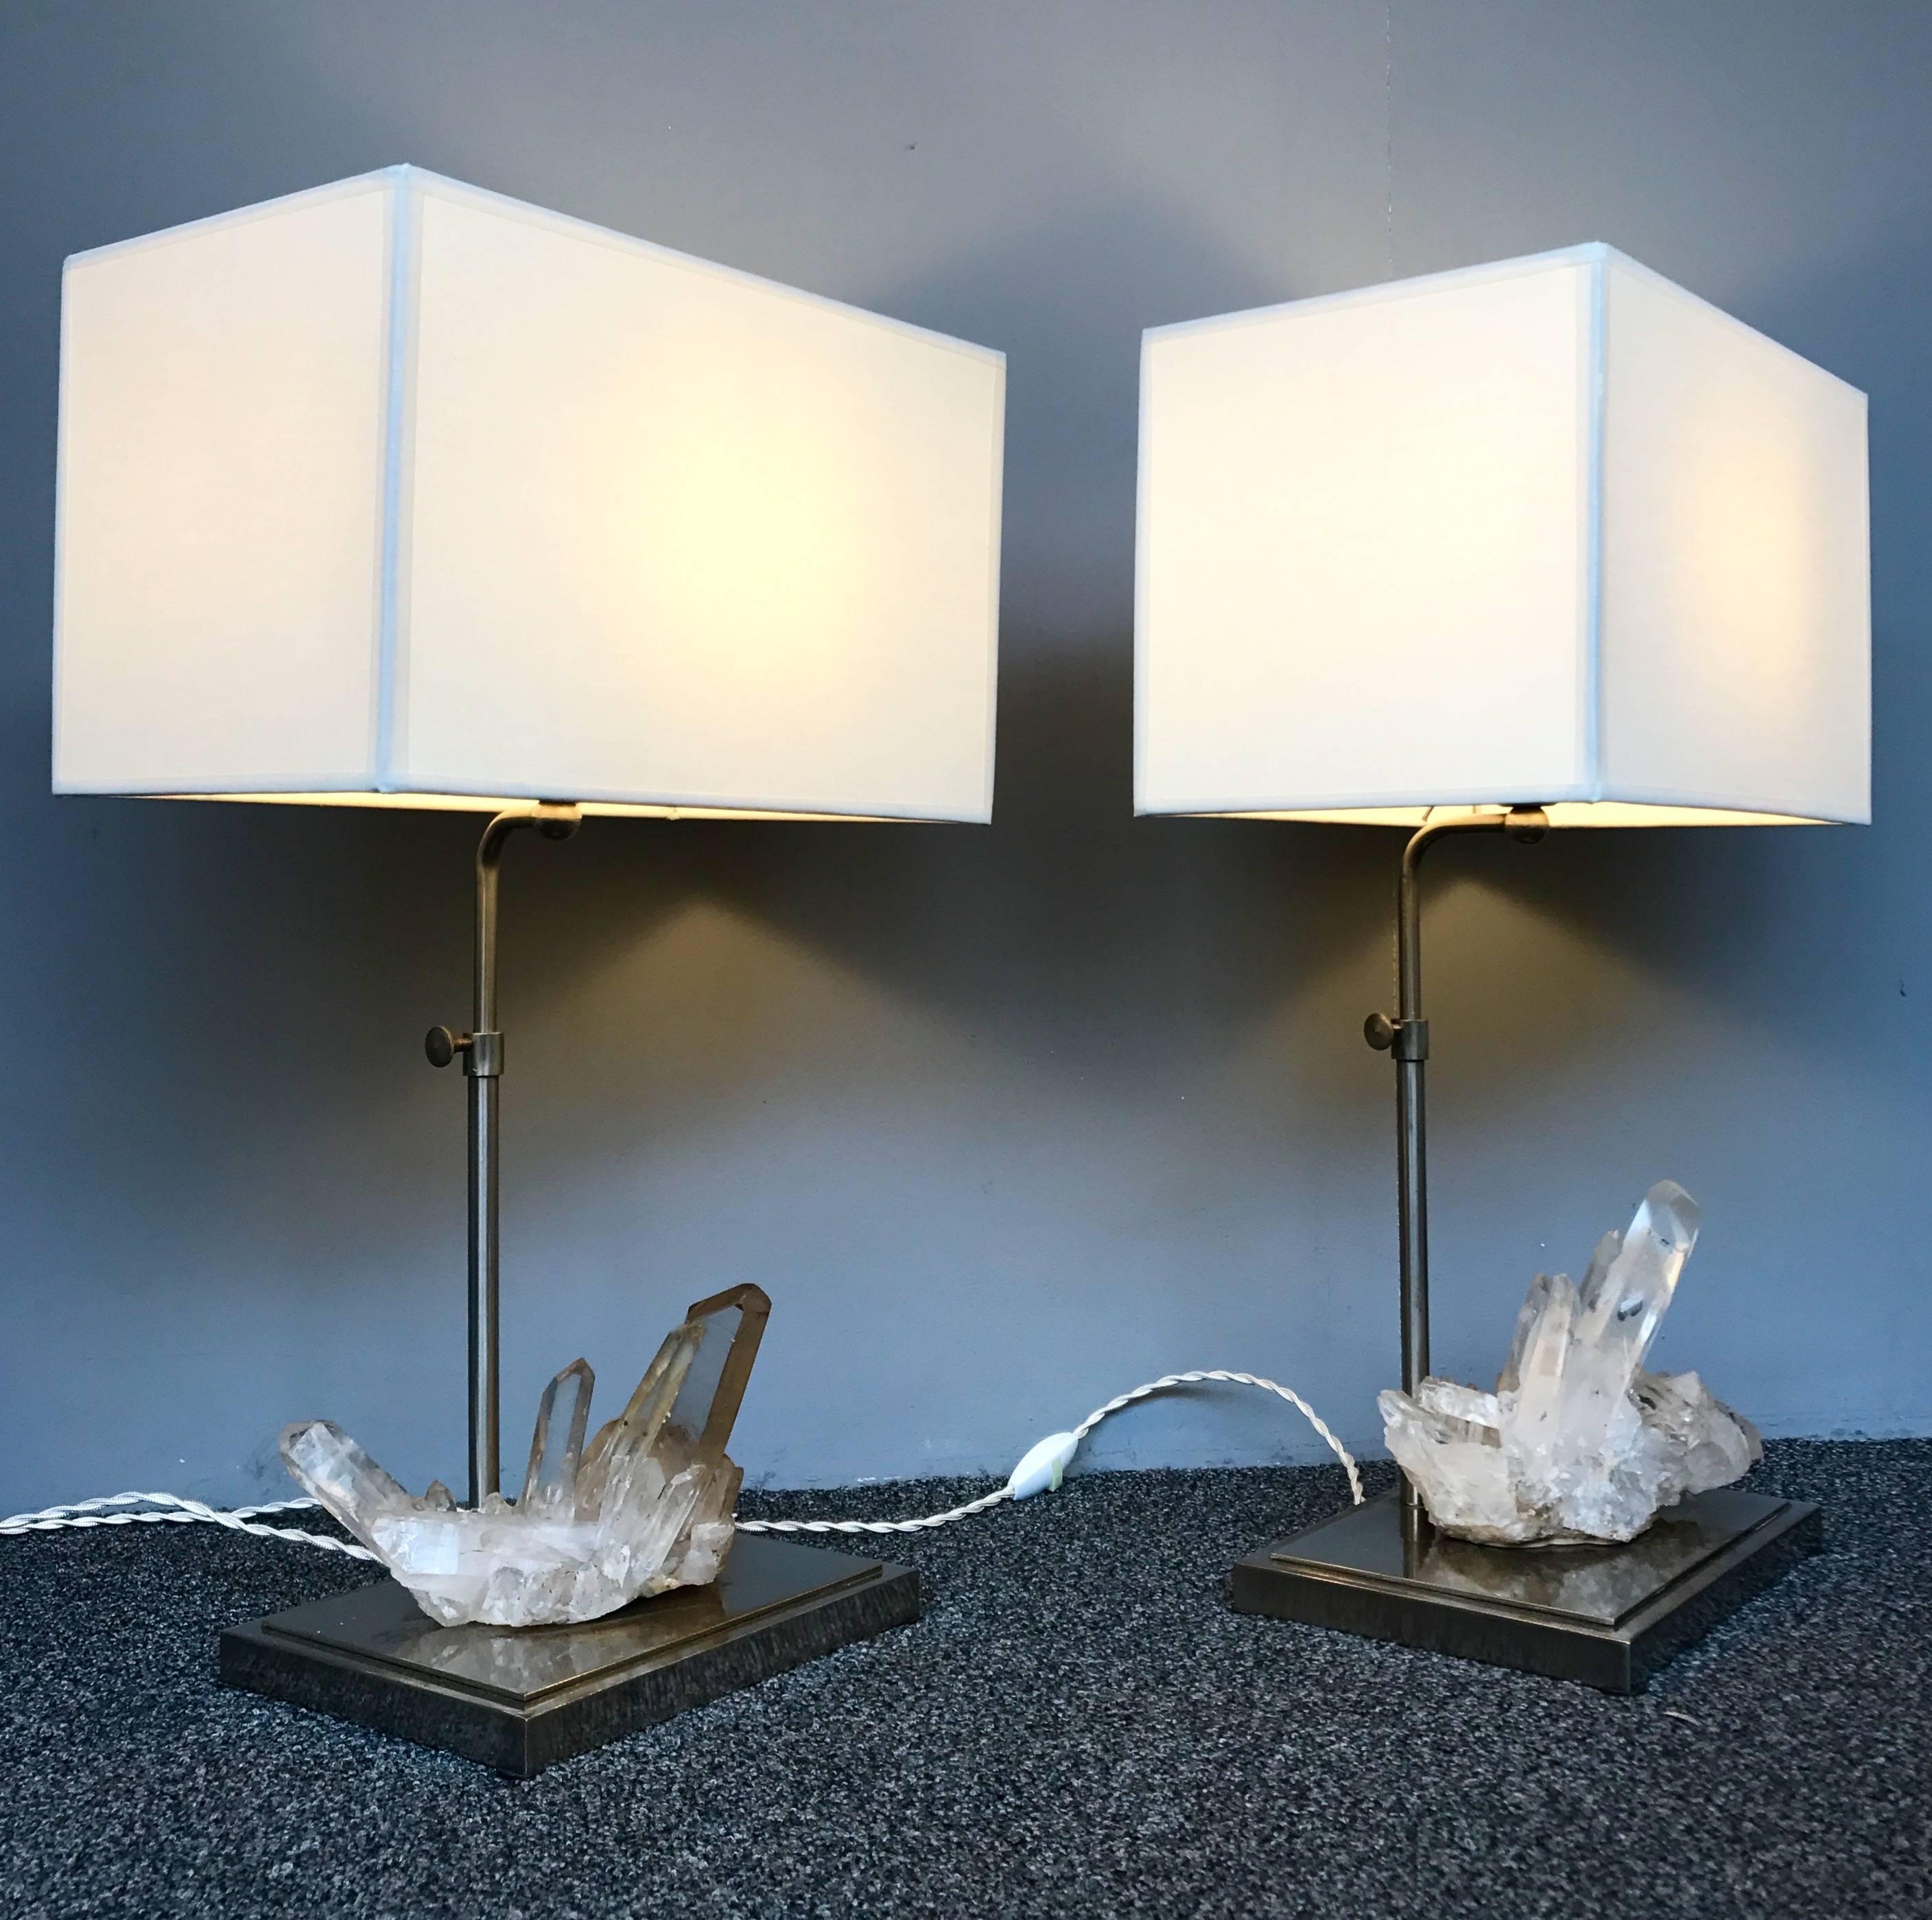 Elegantes Lampenpaar, schöner Bergkristall Quarz Naturstein. Perfekter Lampenschirm. Lampenherstellung typisch für die 1970er Jahre in einem Kuriositätenkabinett Geist. Höhenverstellbar H 60 cm.